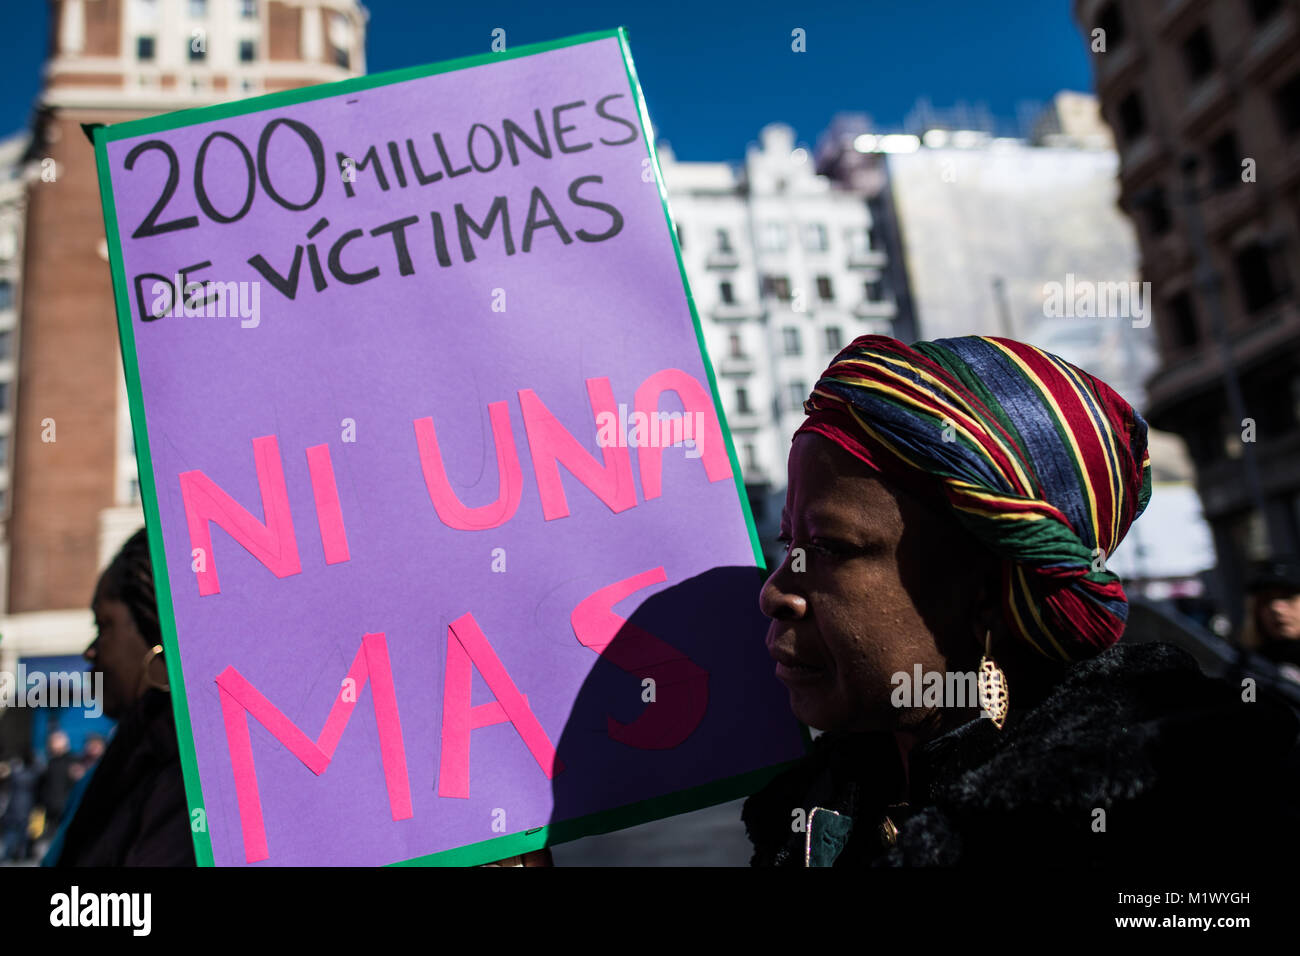 Madrid, Spagna. 3 febbraio, 2018. Una donna con un cartello che recita "200 milioni di vittime, nessuno più' che protestavano contro le mutilazioni genitali femminili in Spagna a Madrid. Credito: Marcos del Mazo/Alamy Live News Foto Stock